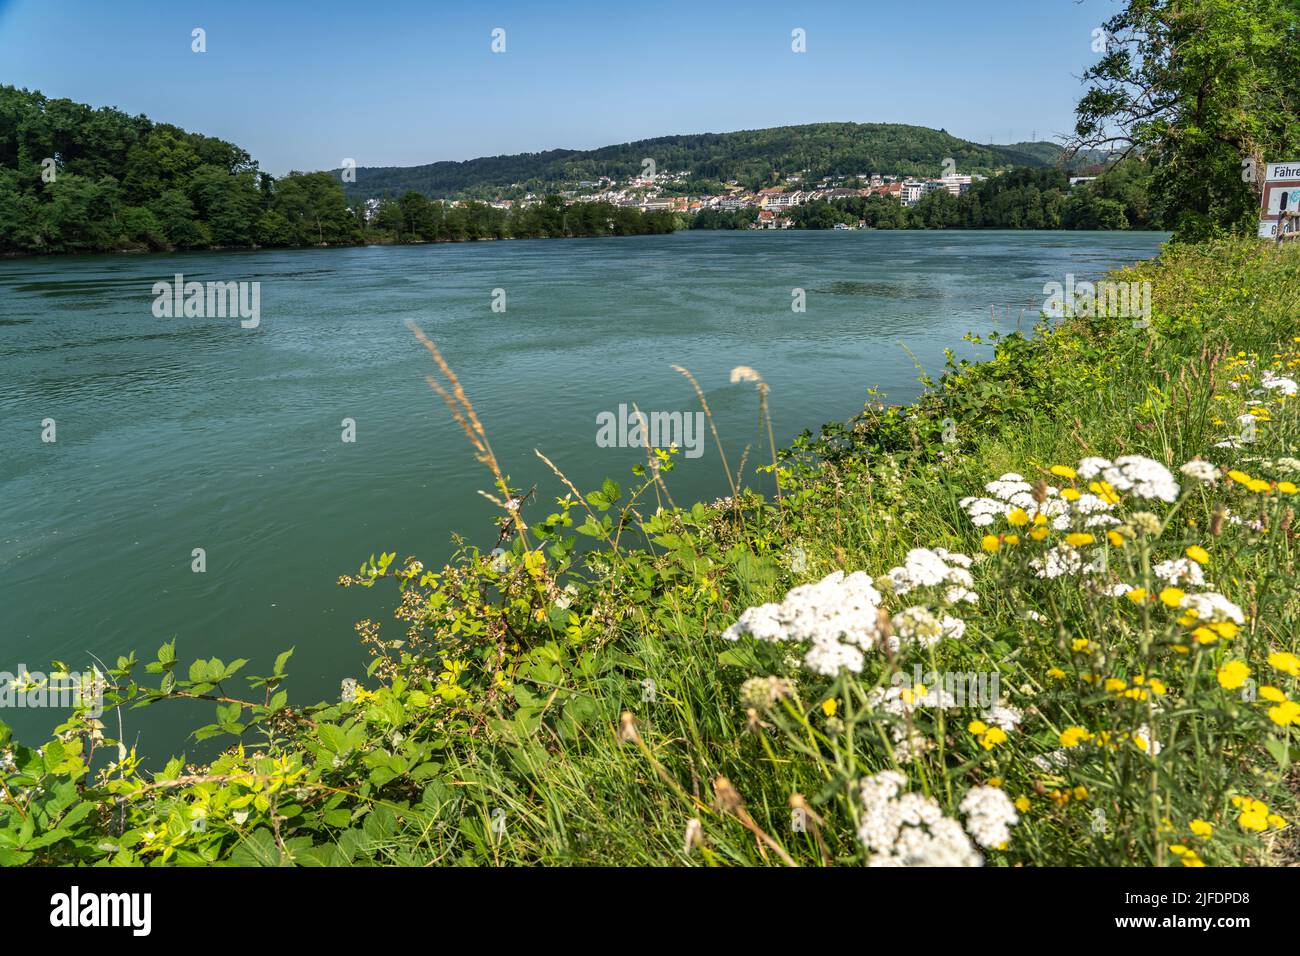 Der Rhein bei Waldshut-Tiengen, Baden-Württemberg, Deutschland | il fiume Reno vicino a Waldshut-Tiengen, Baden-Württemberg, Germania Foto Stock